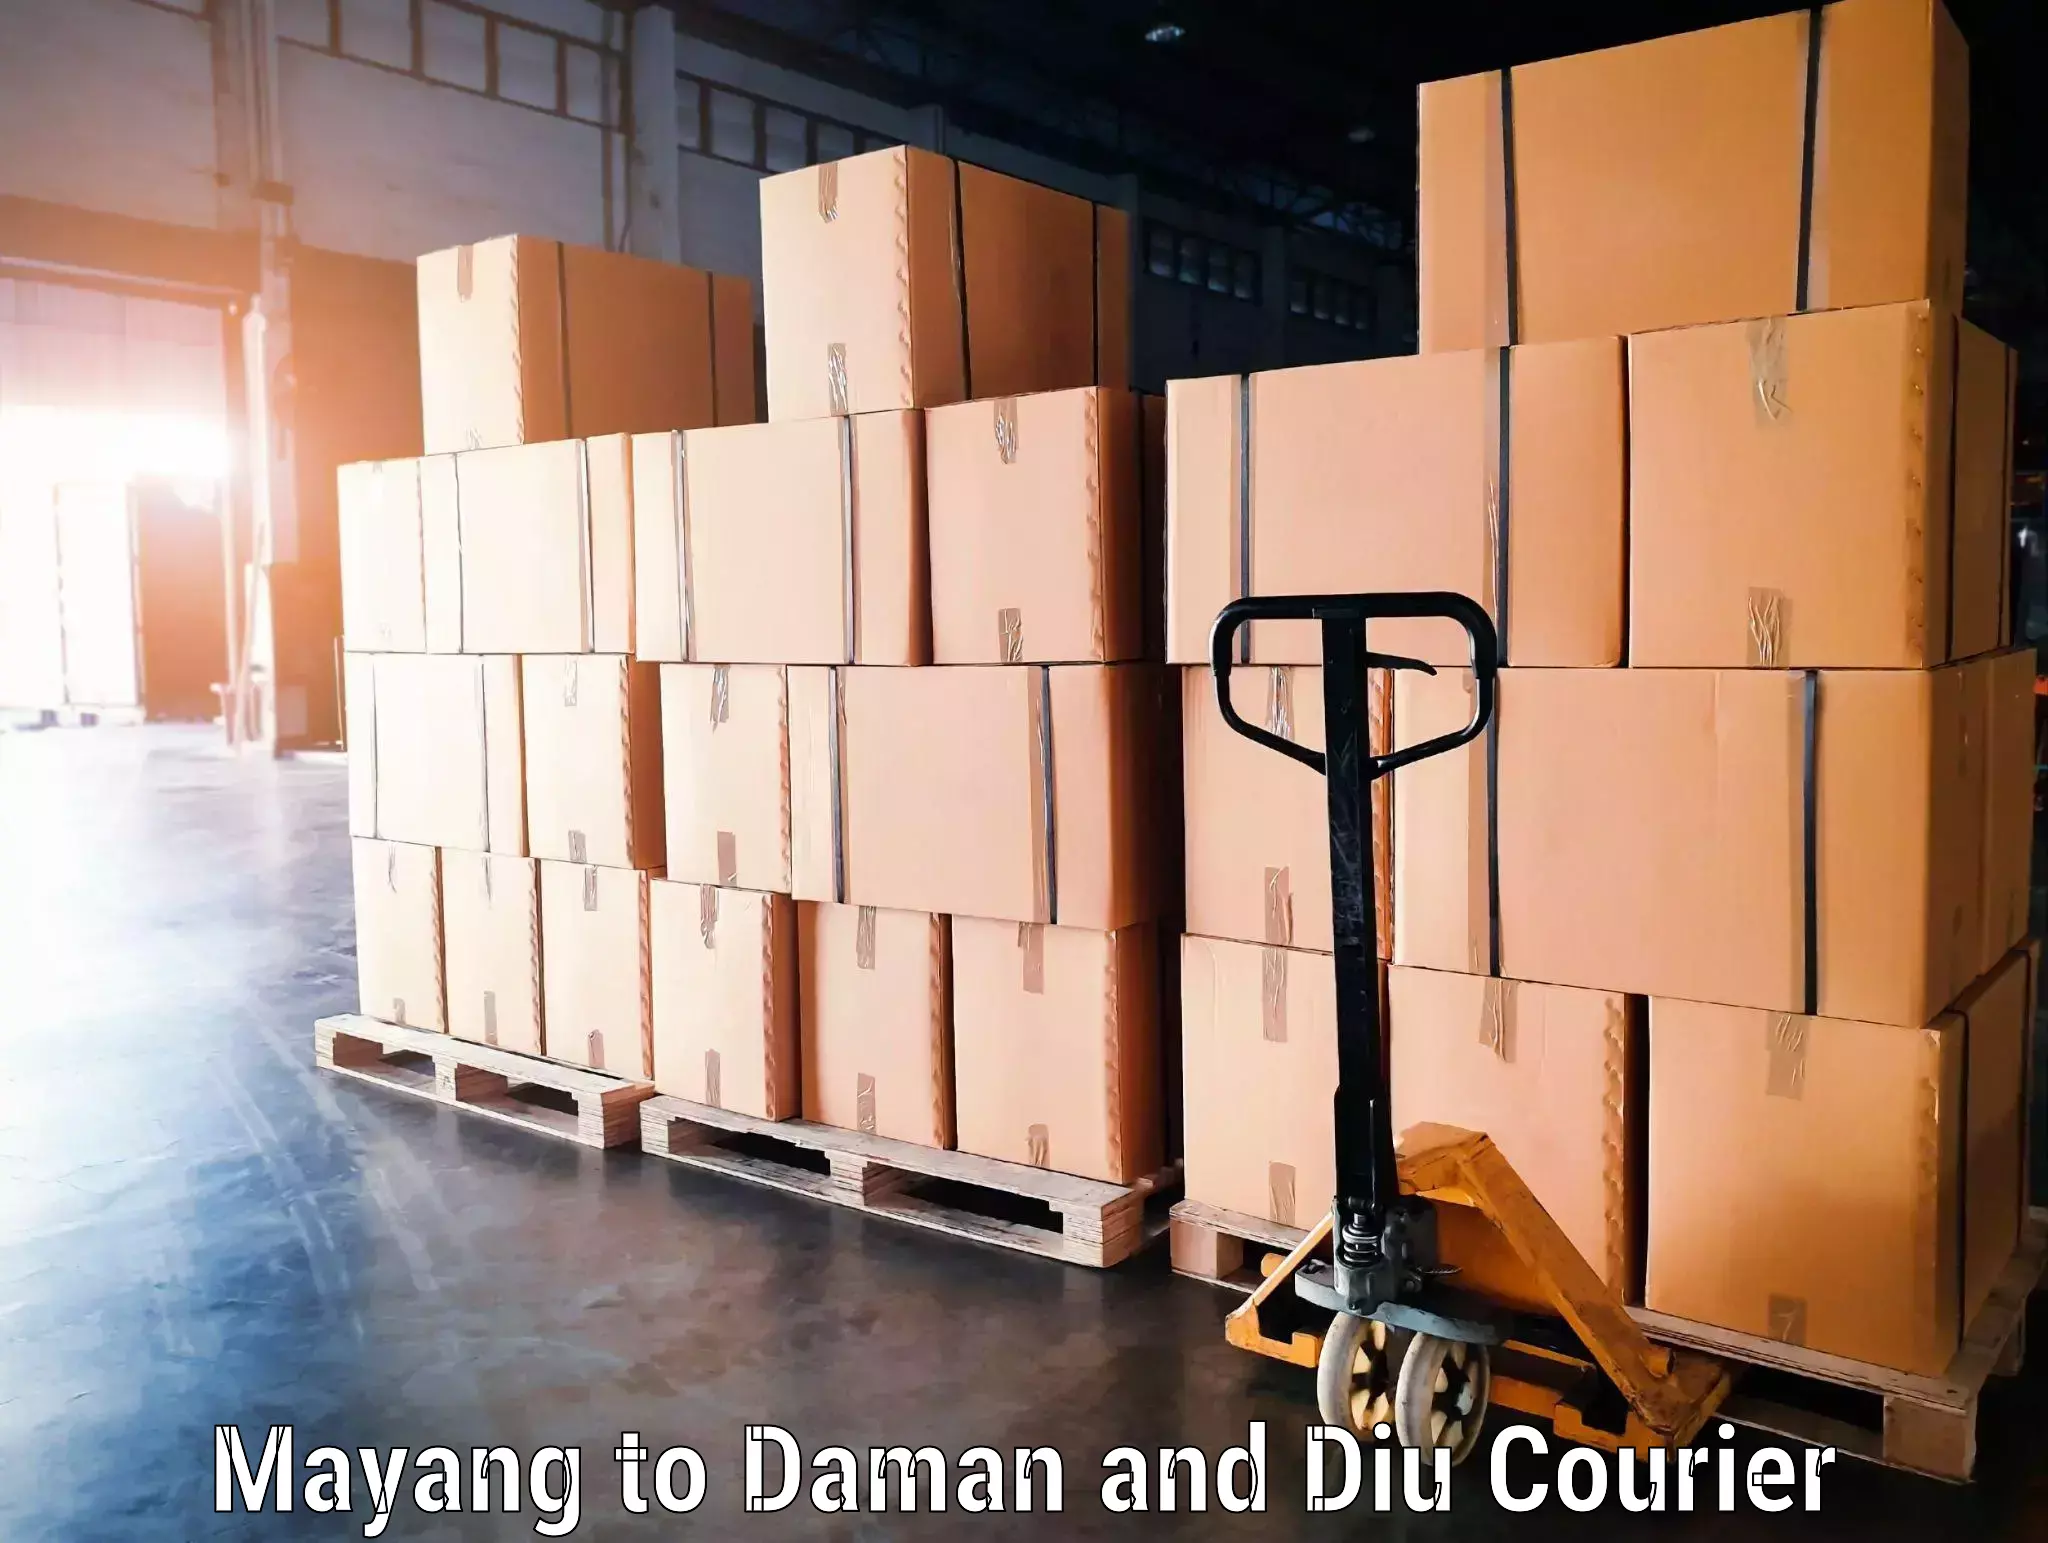 Door-to-door baggage service Mayang to Daman